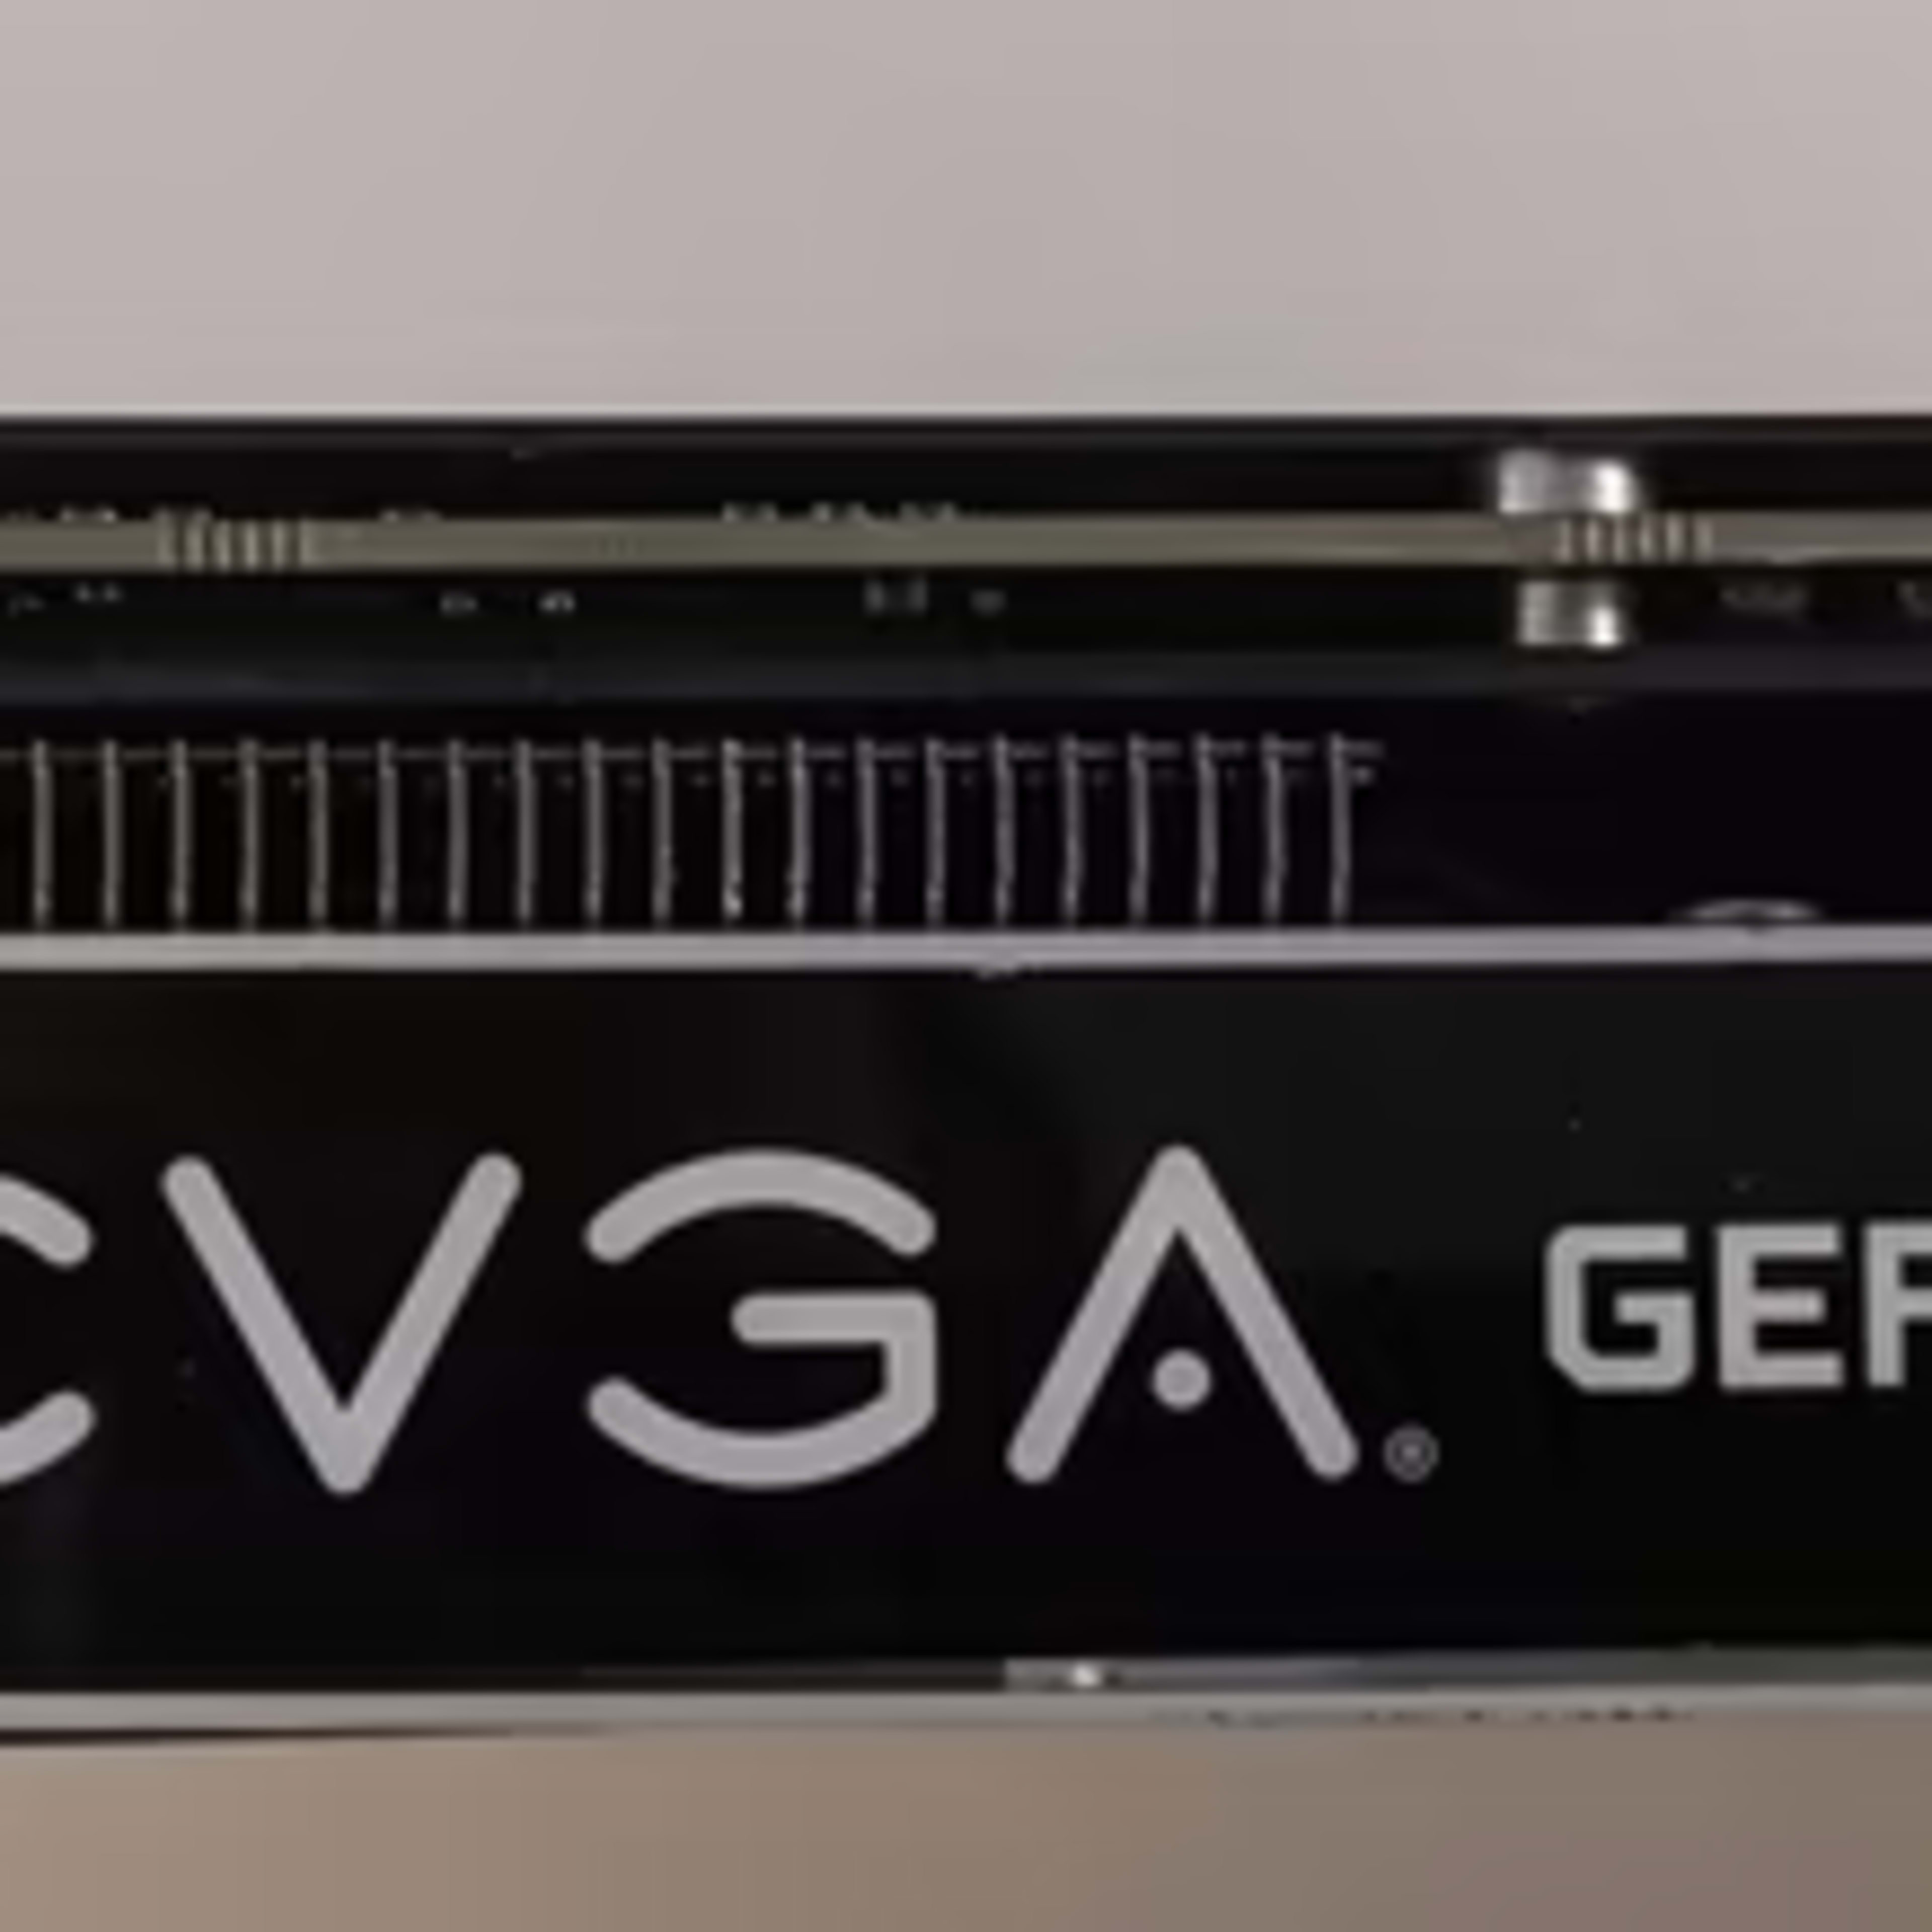 EVGA GeForce GTX 1080 SC GAMING, 08G-P4-6183-RX, 8GB